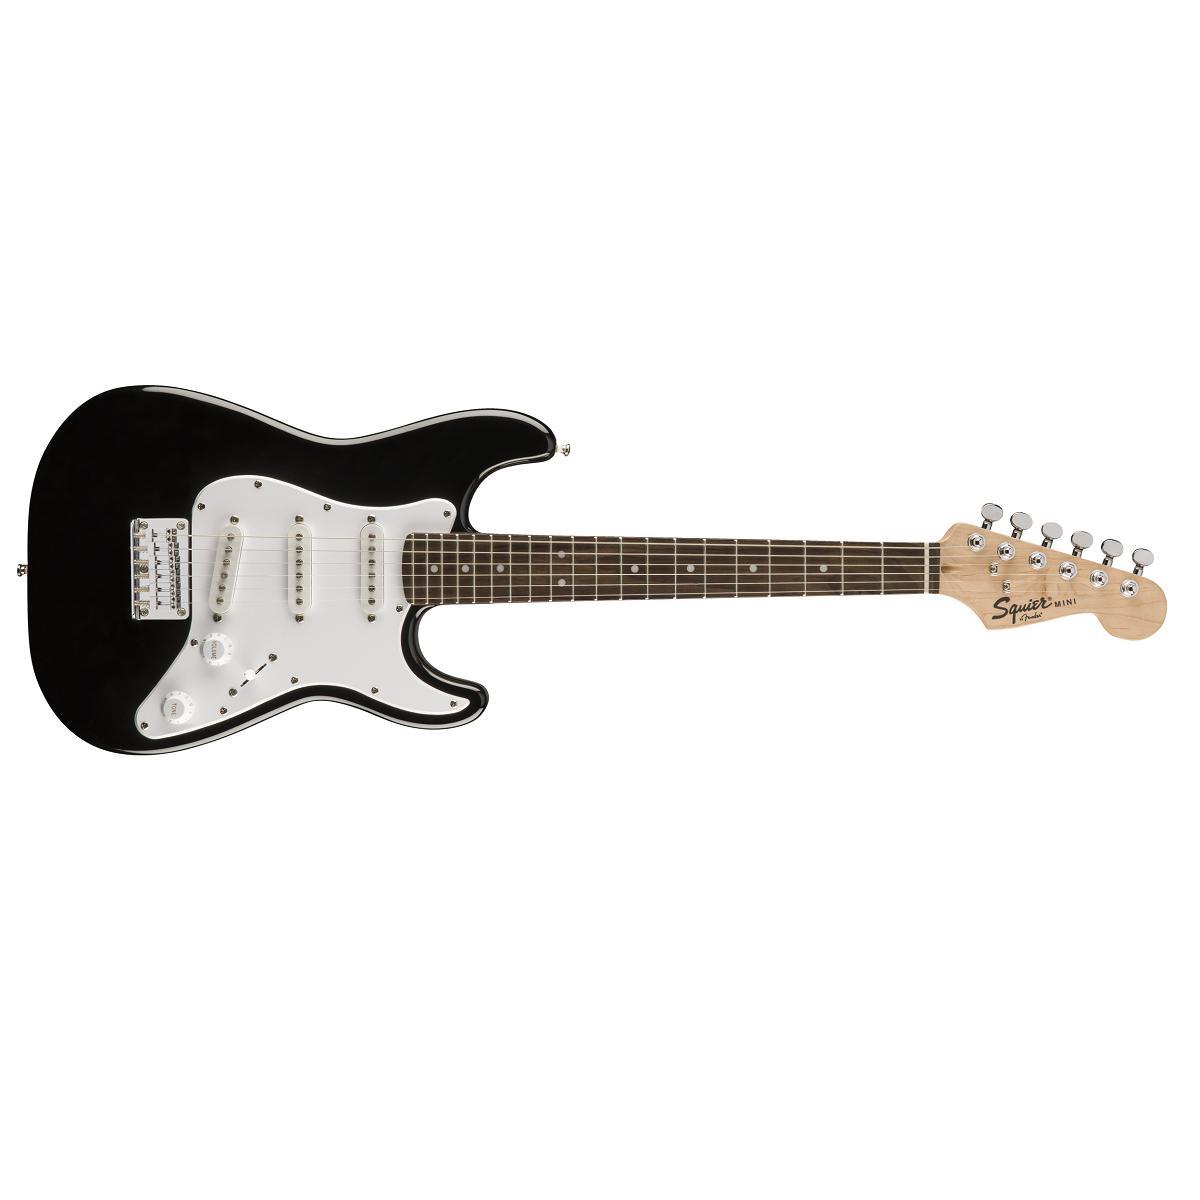 Fender Squier Mini Stratocaster LRL BLK Black Chitarra Elettrica 3/4 NUOVO ARRIVO